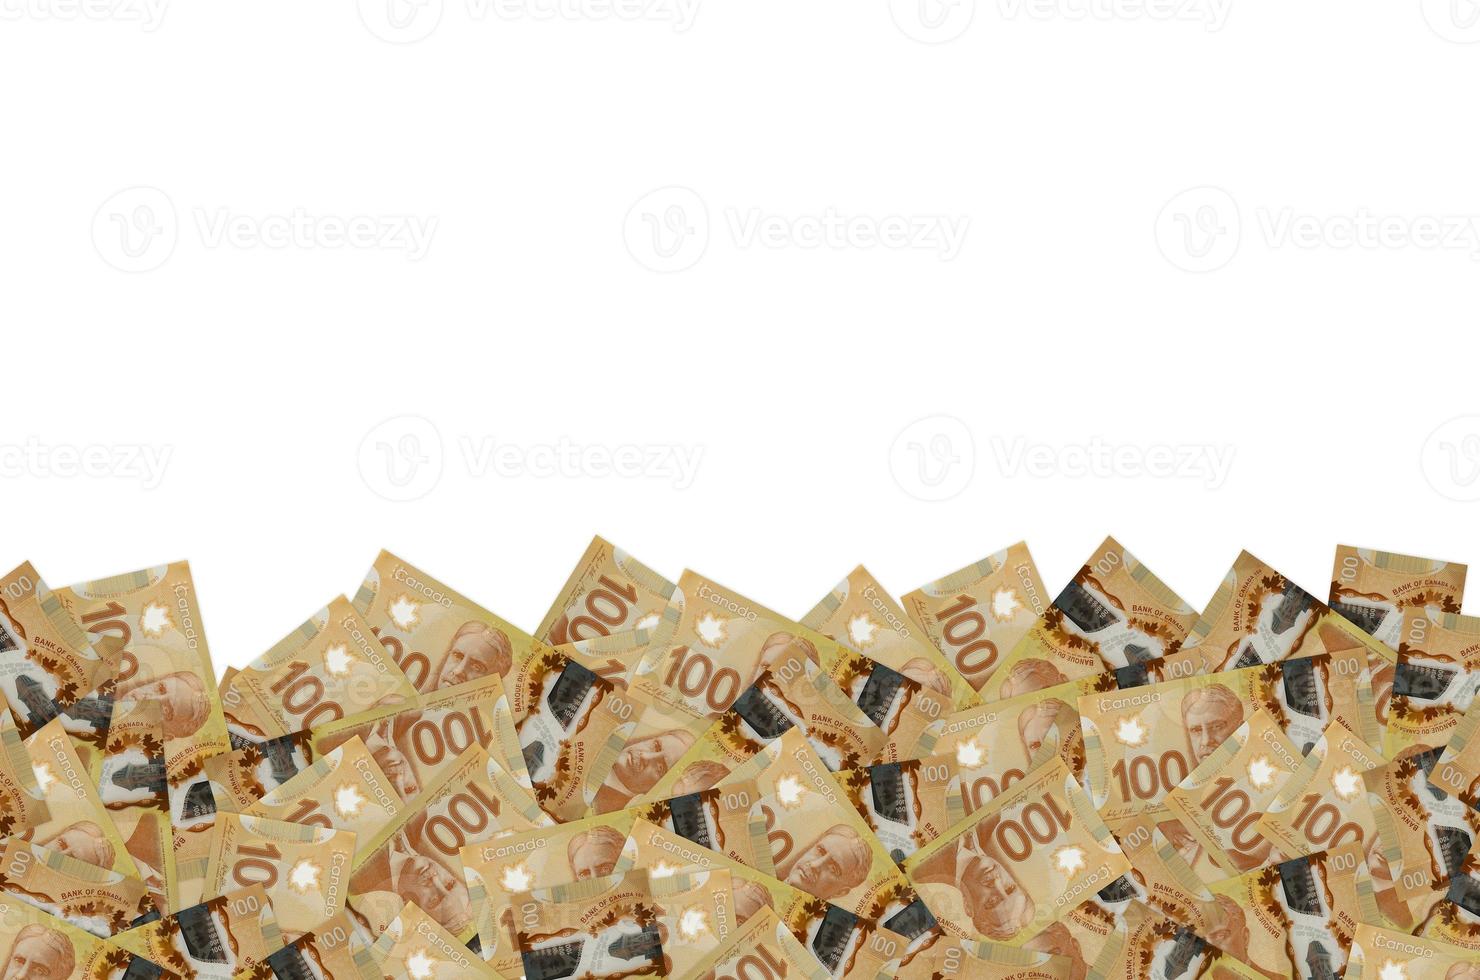 Roberto confine ritratto a partire dal Canada 100 dollari 2011 polimero banconota modello foto